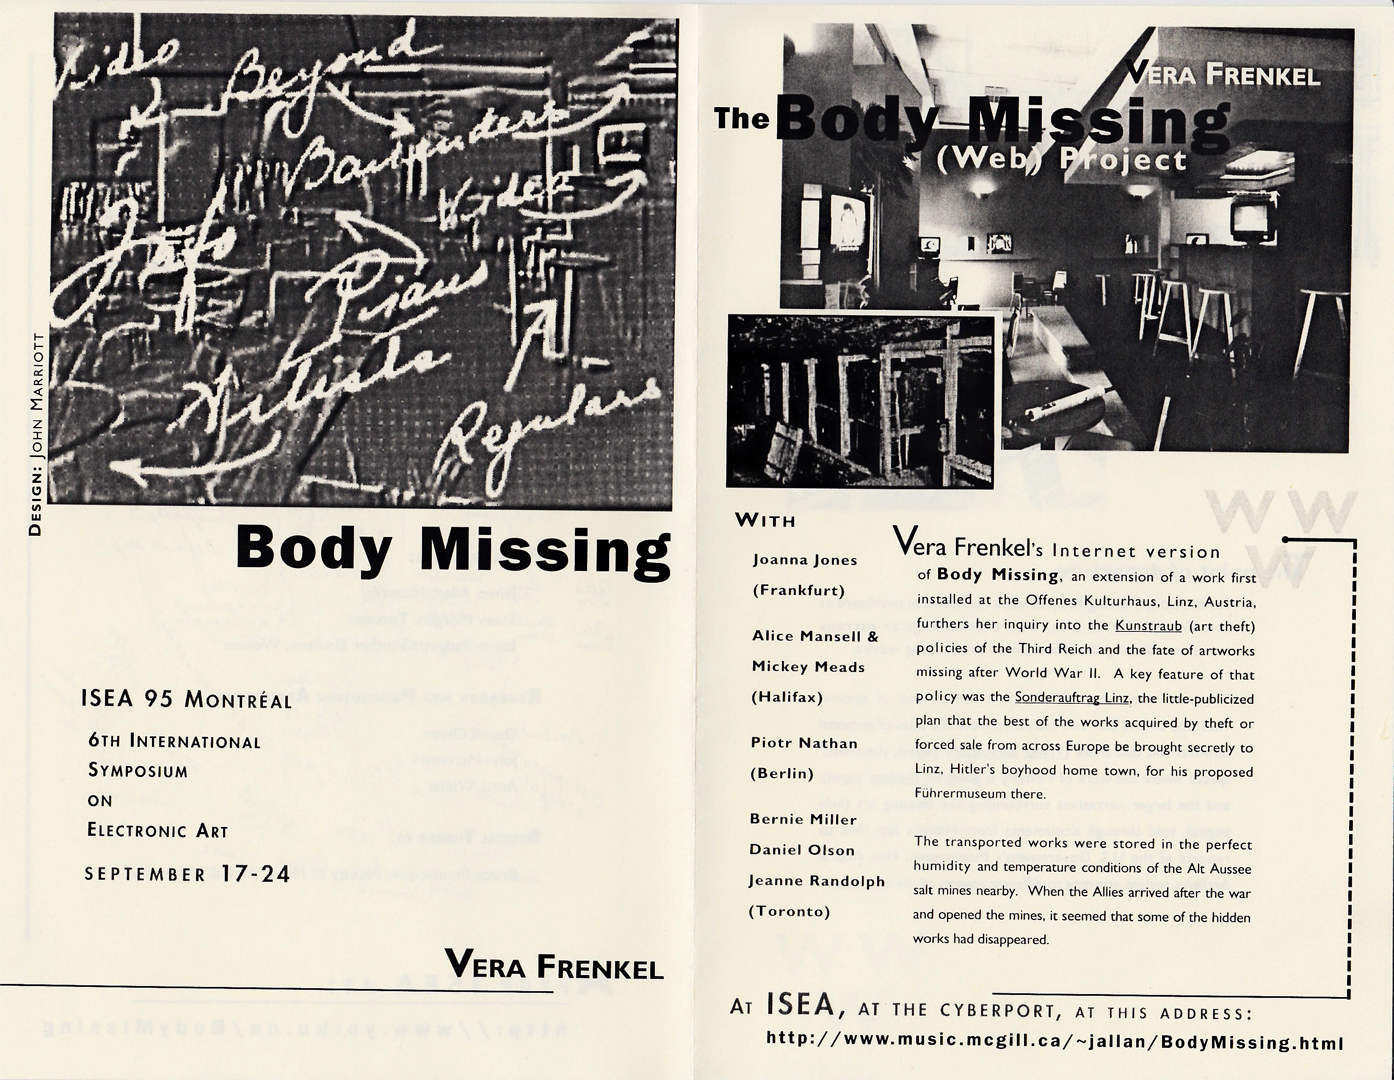 ©, Vera Frenkel, Body Missing